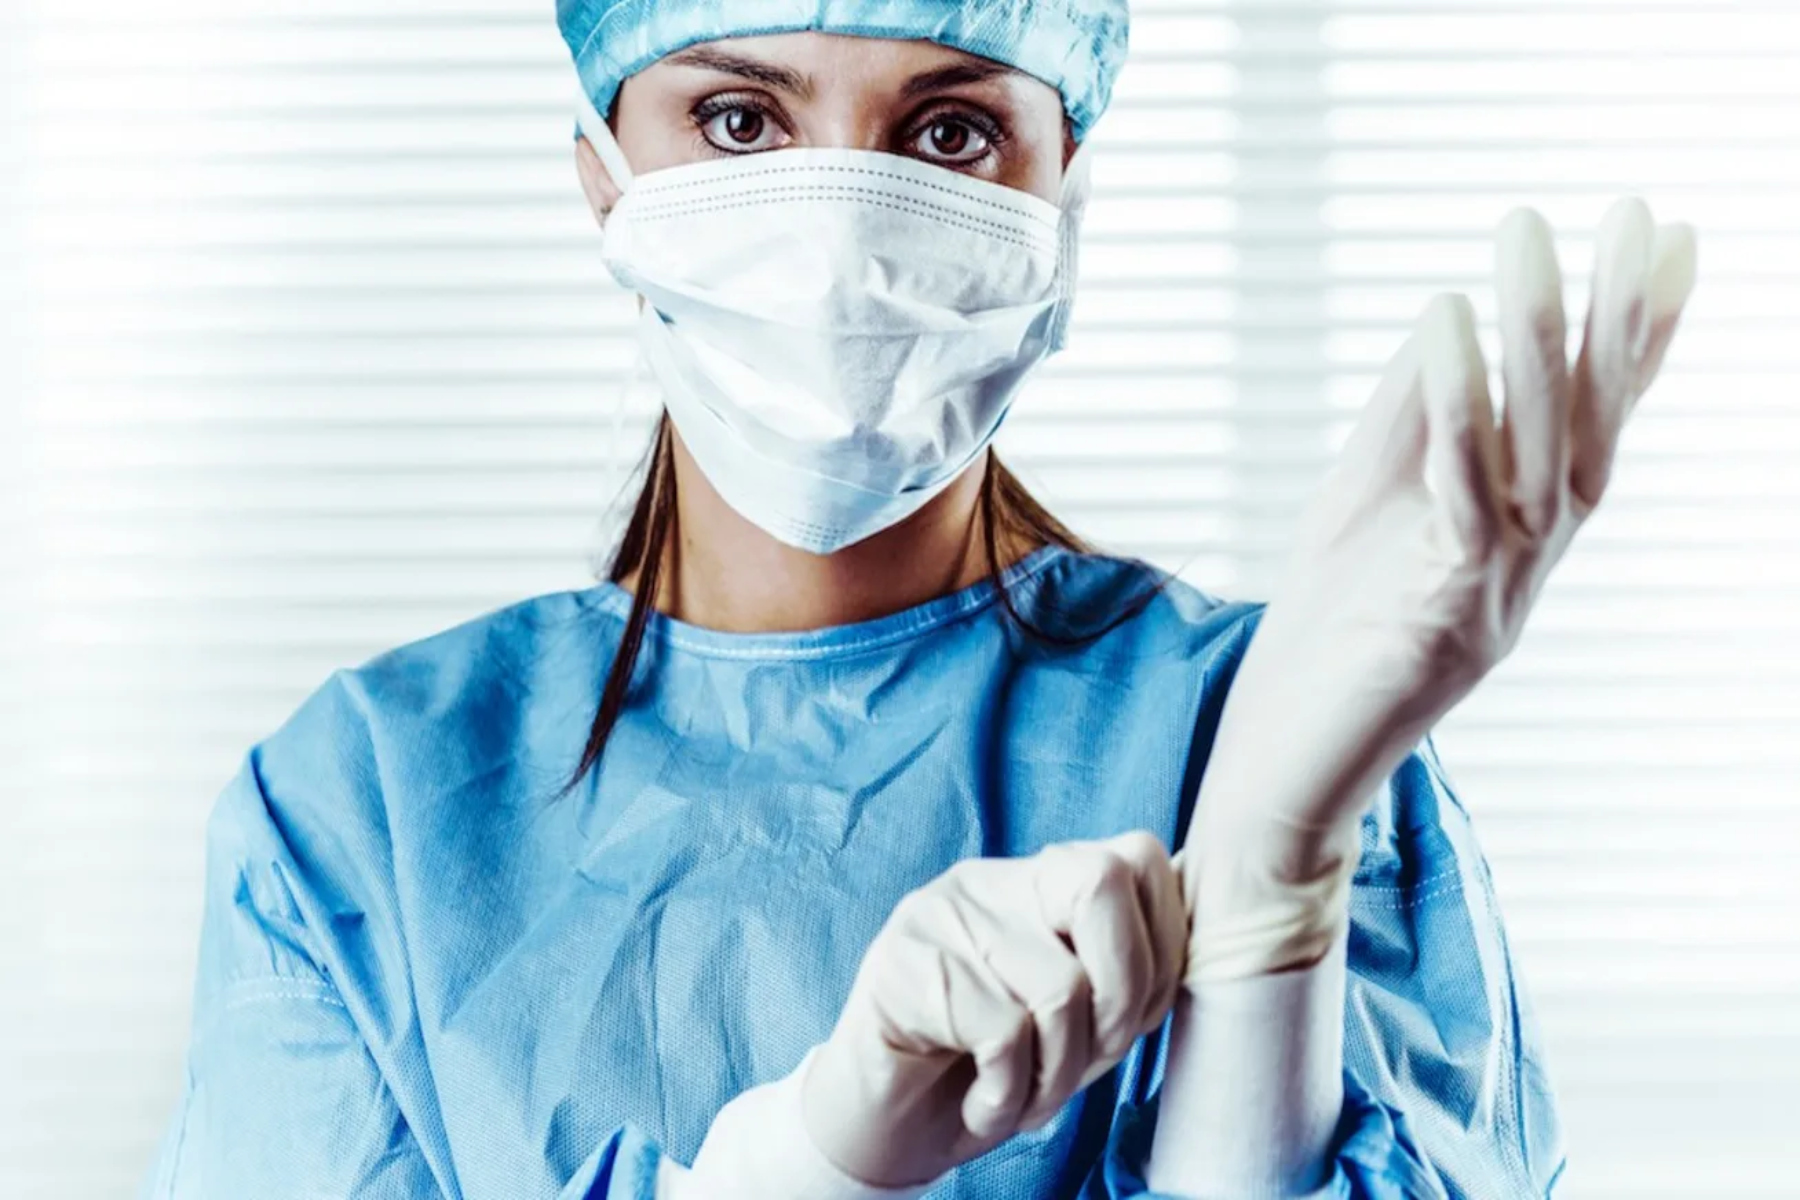 Φύλο χειρουργικός τομέας: Οι γυναίκες χειρουργοί φέρνουν καλύτερα αποτελέσματα στους ασθενείς